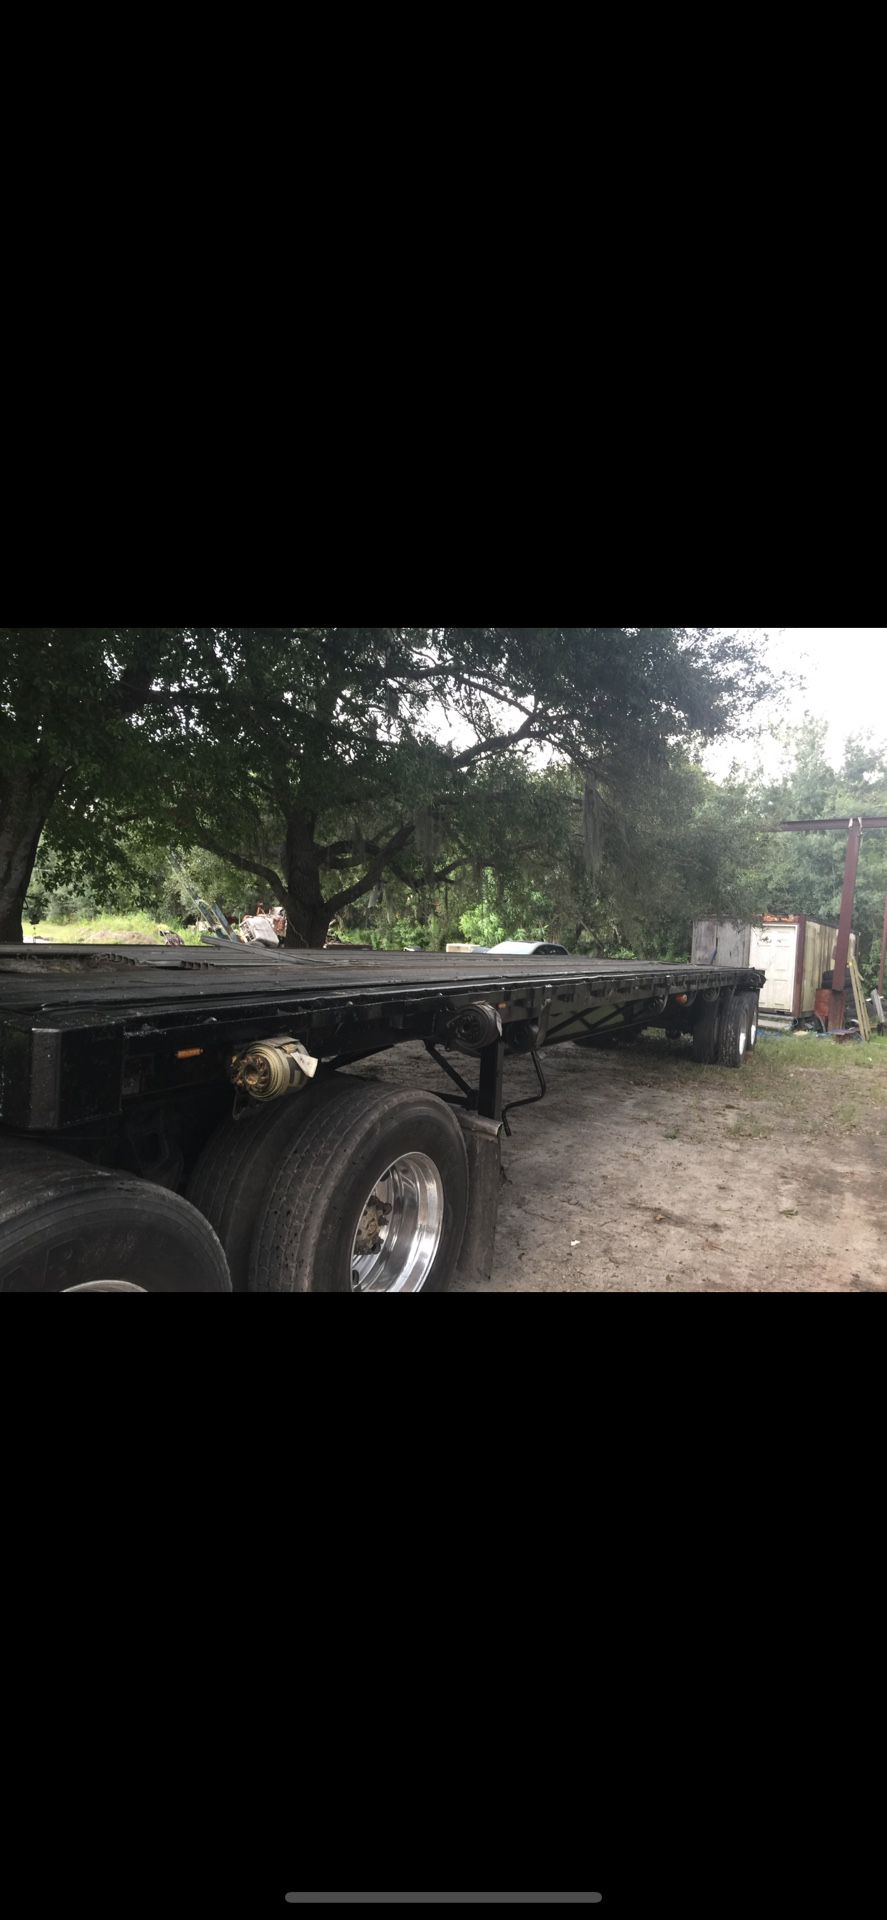 Flatbed trailer.